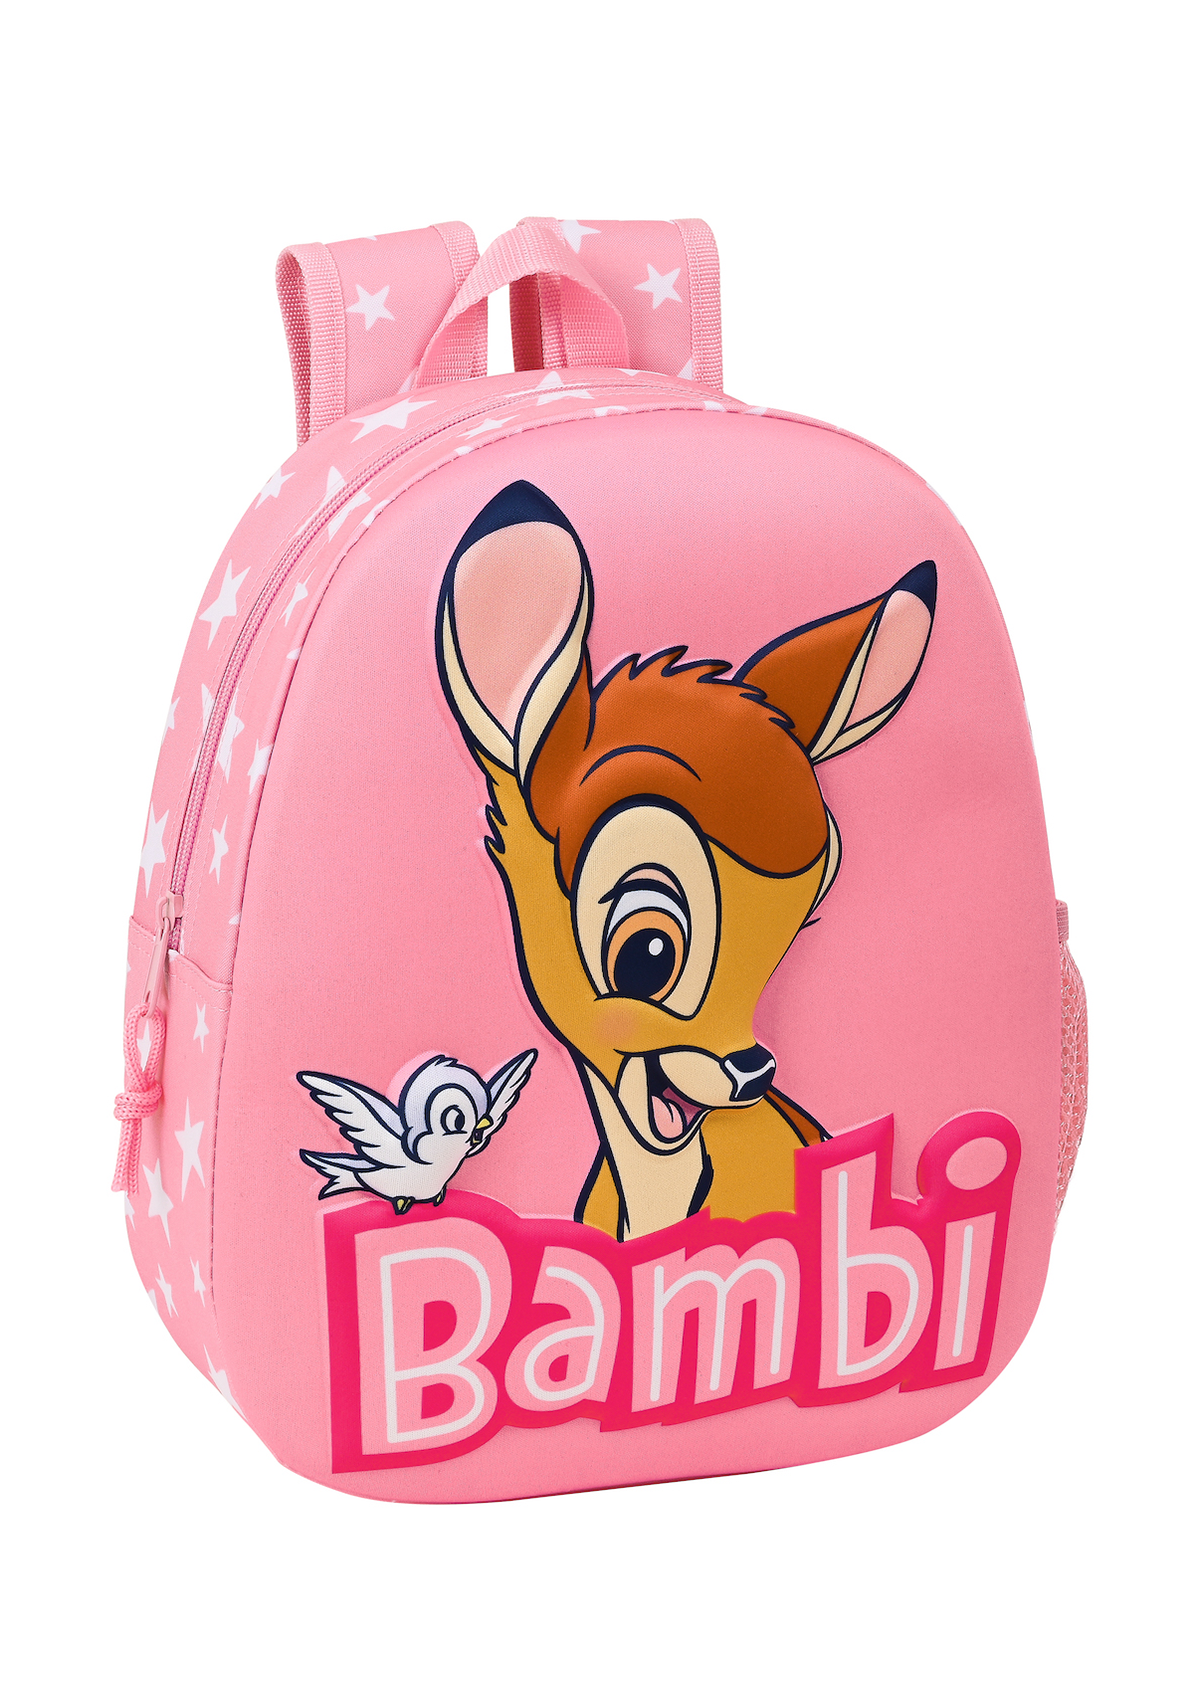 Bambi Backpack 3D